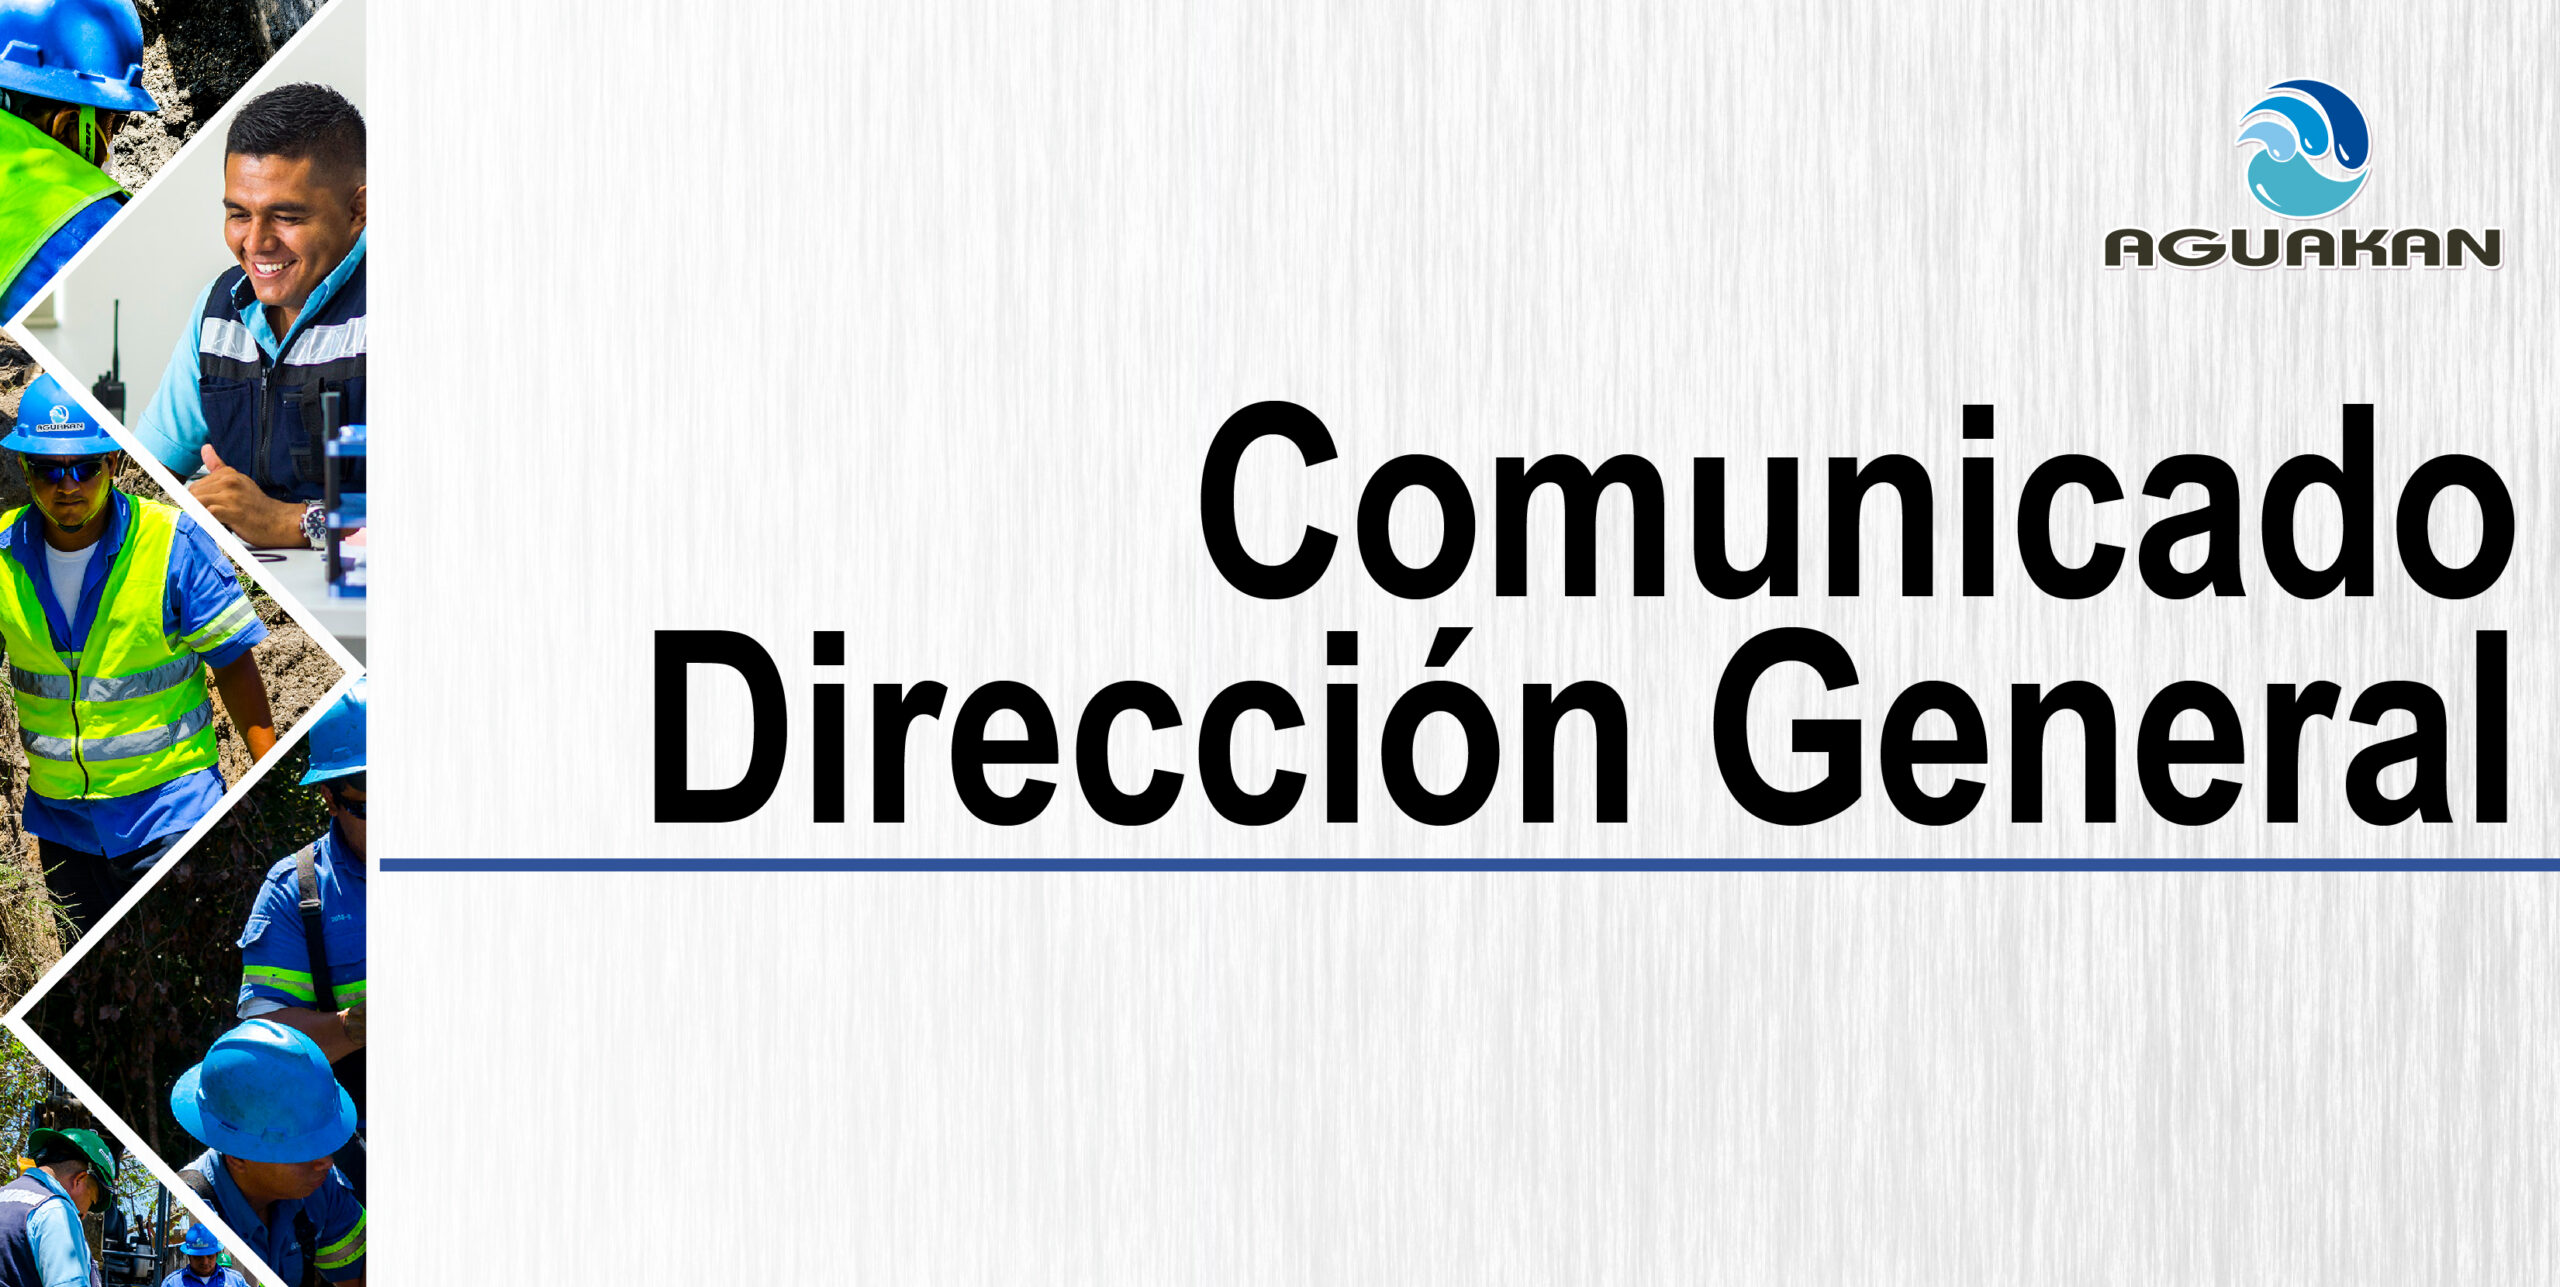 Comunicado Dirección General: lineamientos y protocolo ante COVID-19